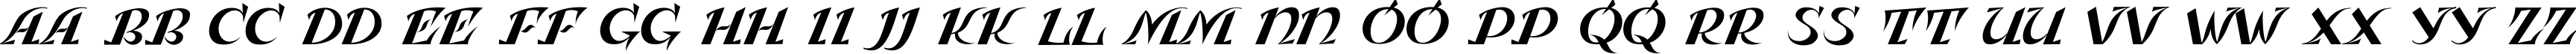 Пример написания английского алфавита шрифтом Leningradka Kursiv